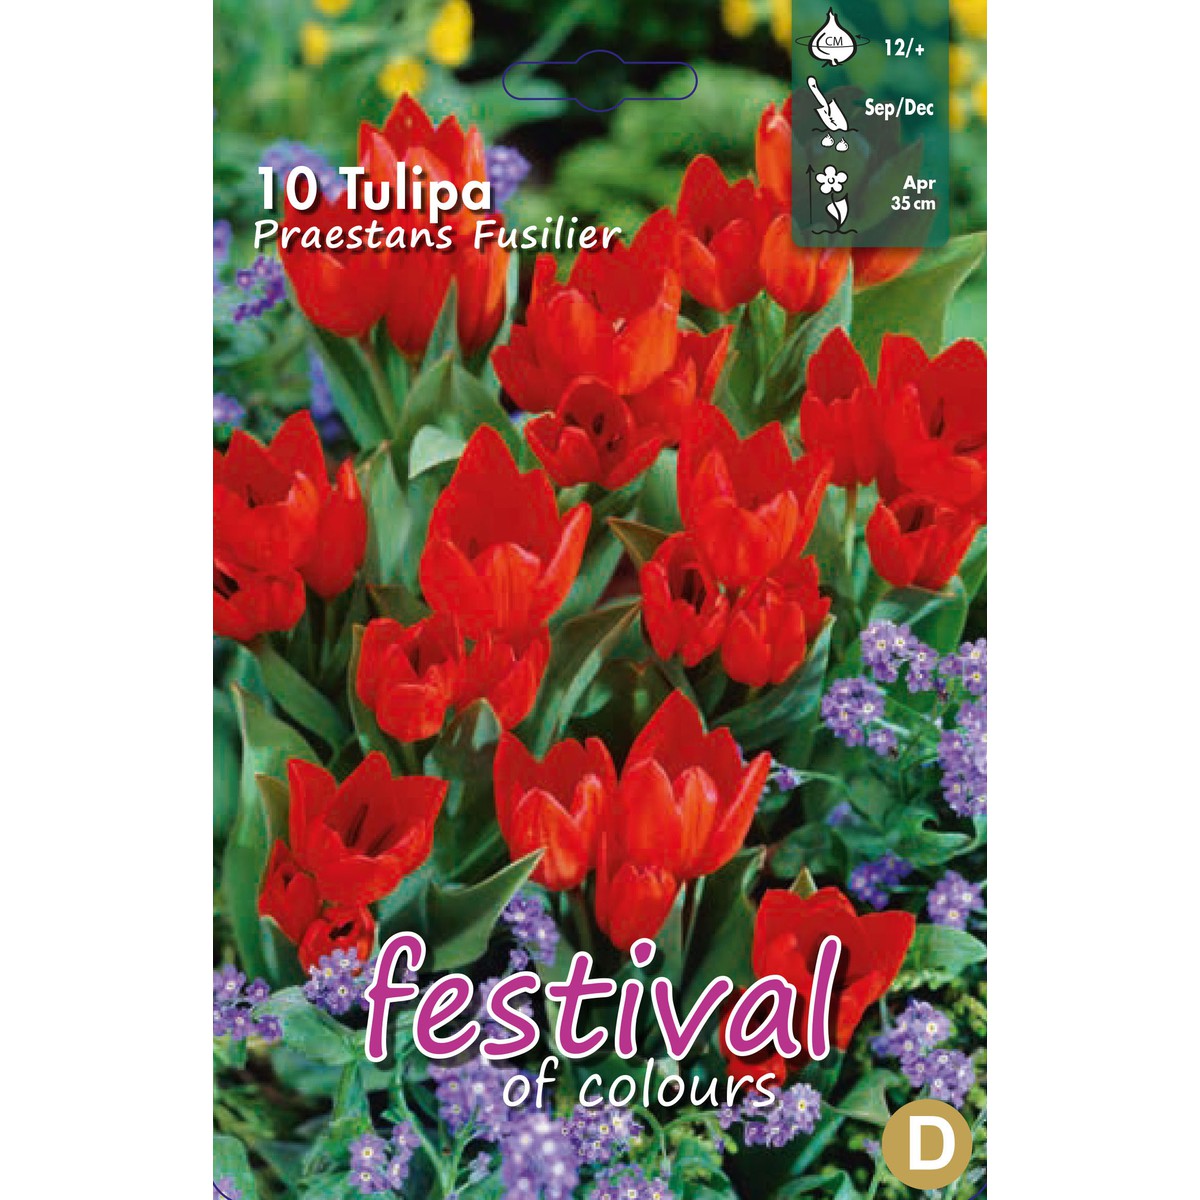   Tulipes 'Praestans Fusilier'  10 pcs 12/